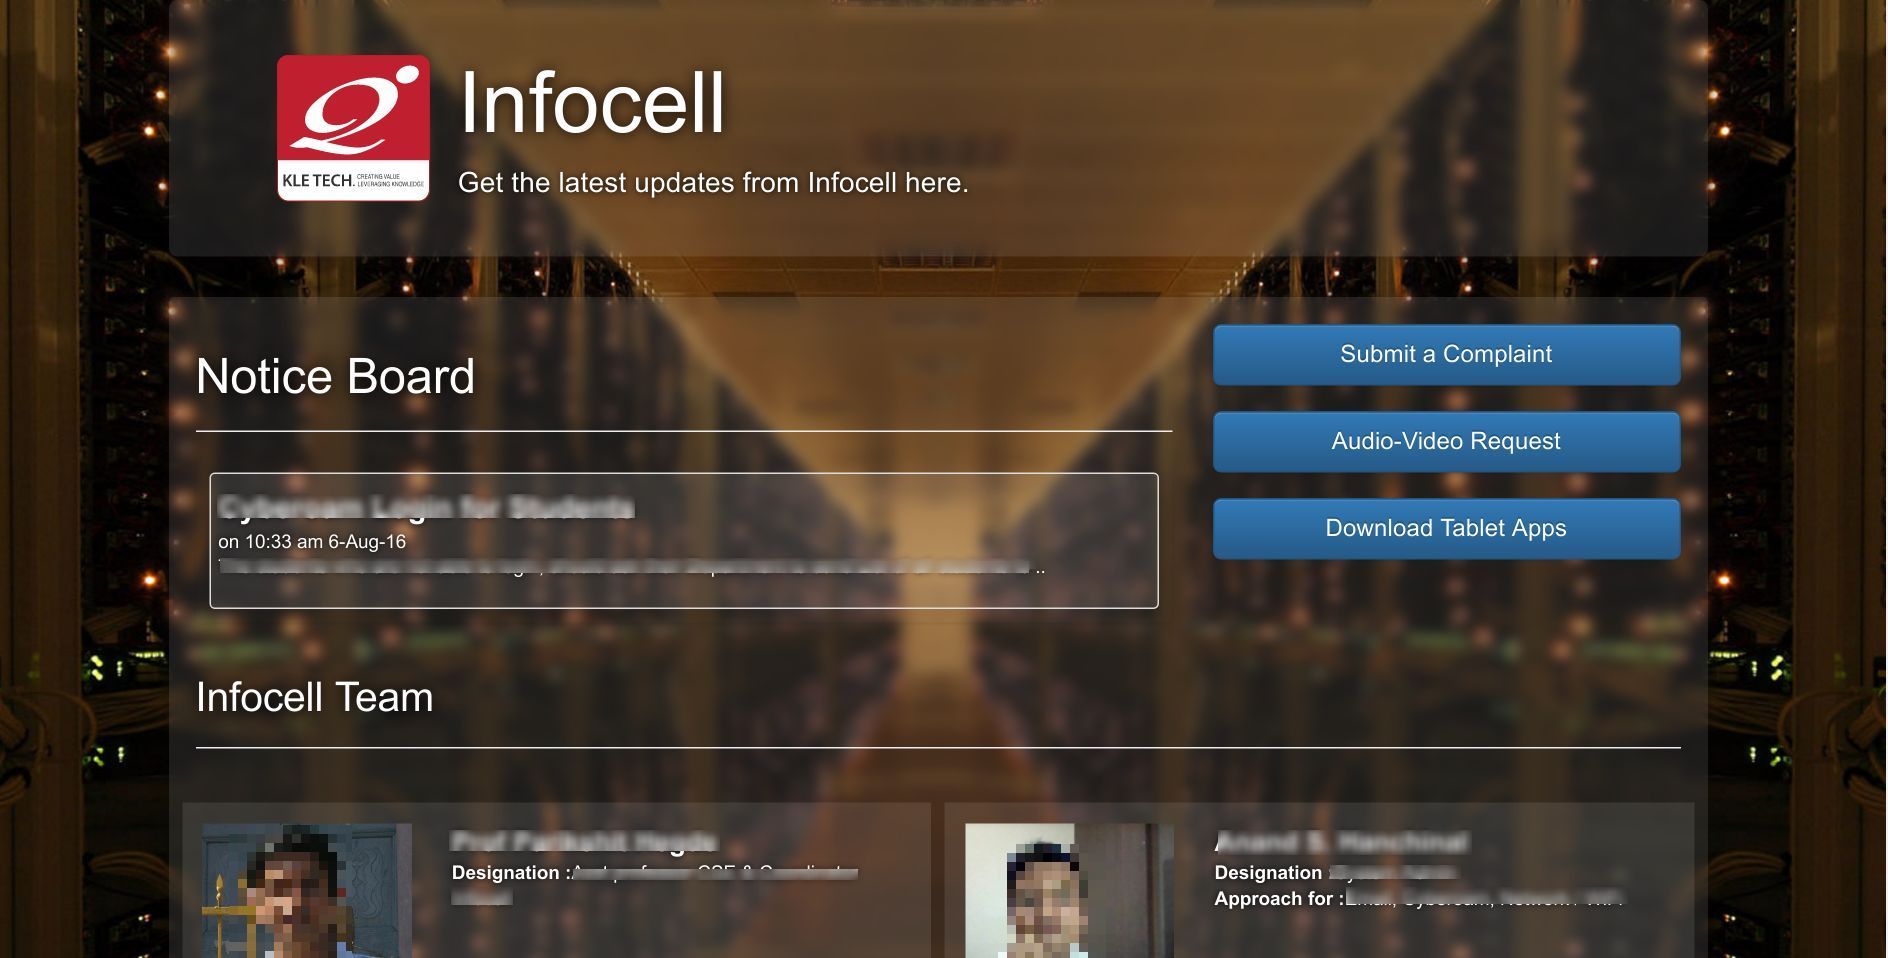 Infocell website